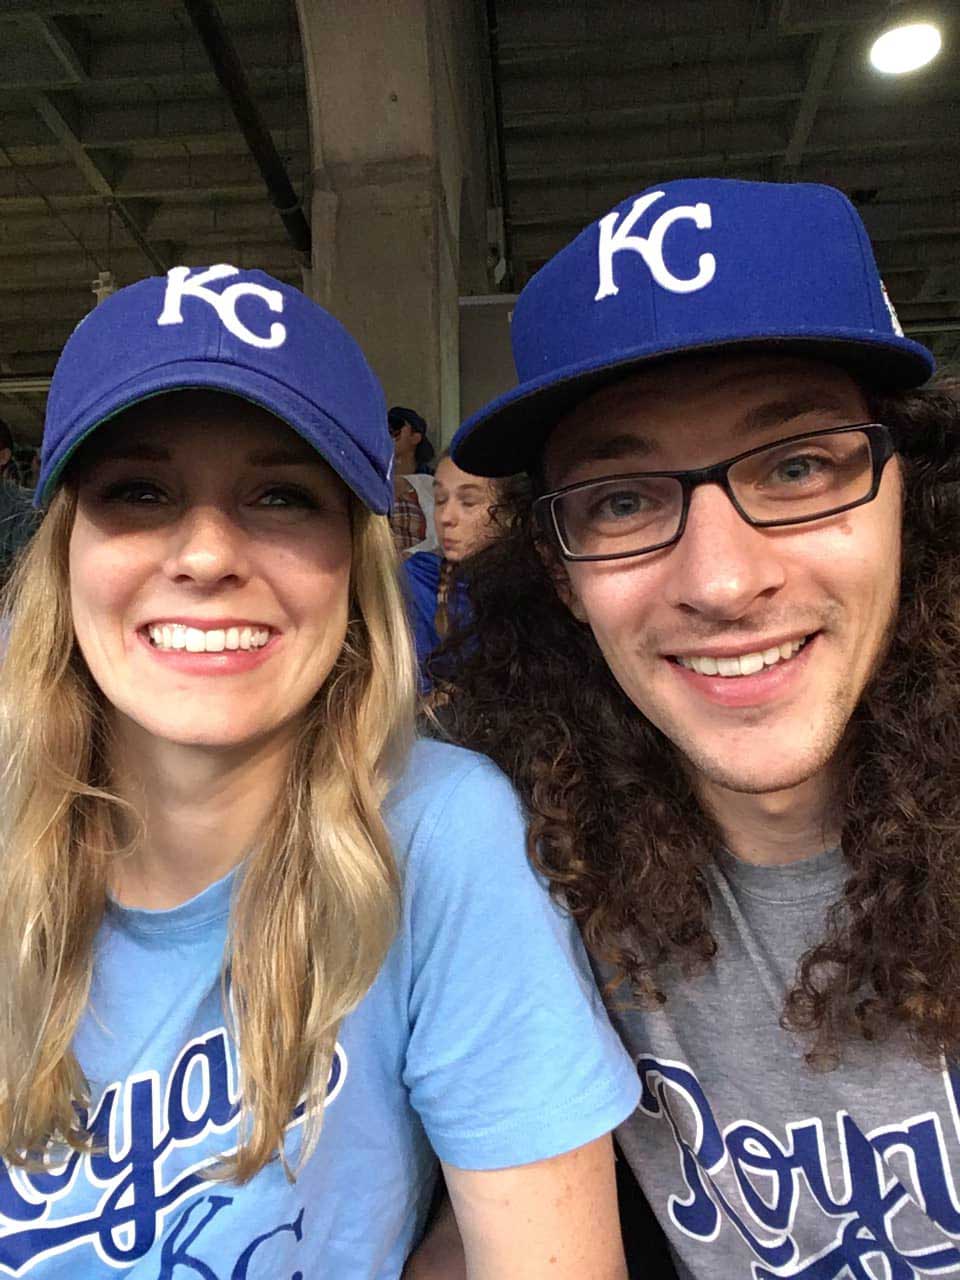 Selfie of Amanda and her partner in KC Royals hats